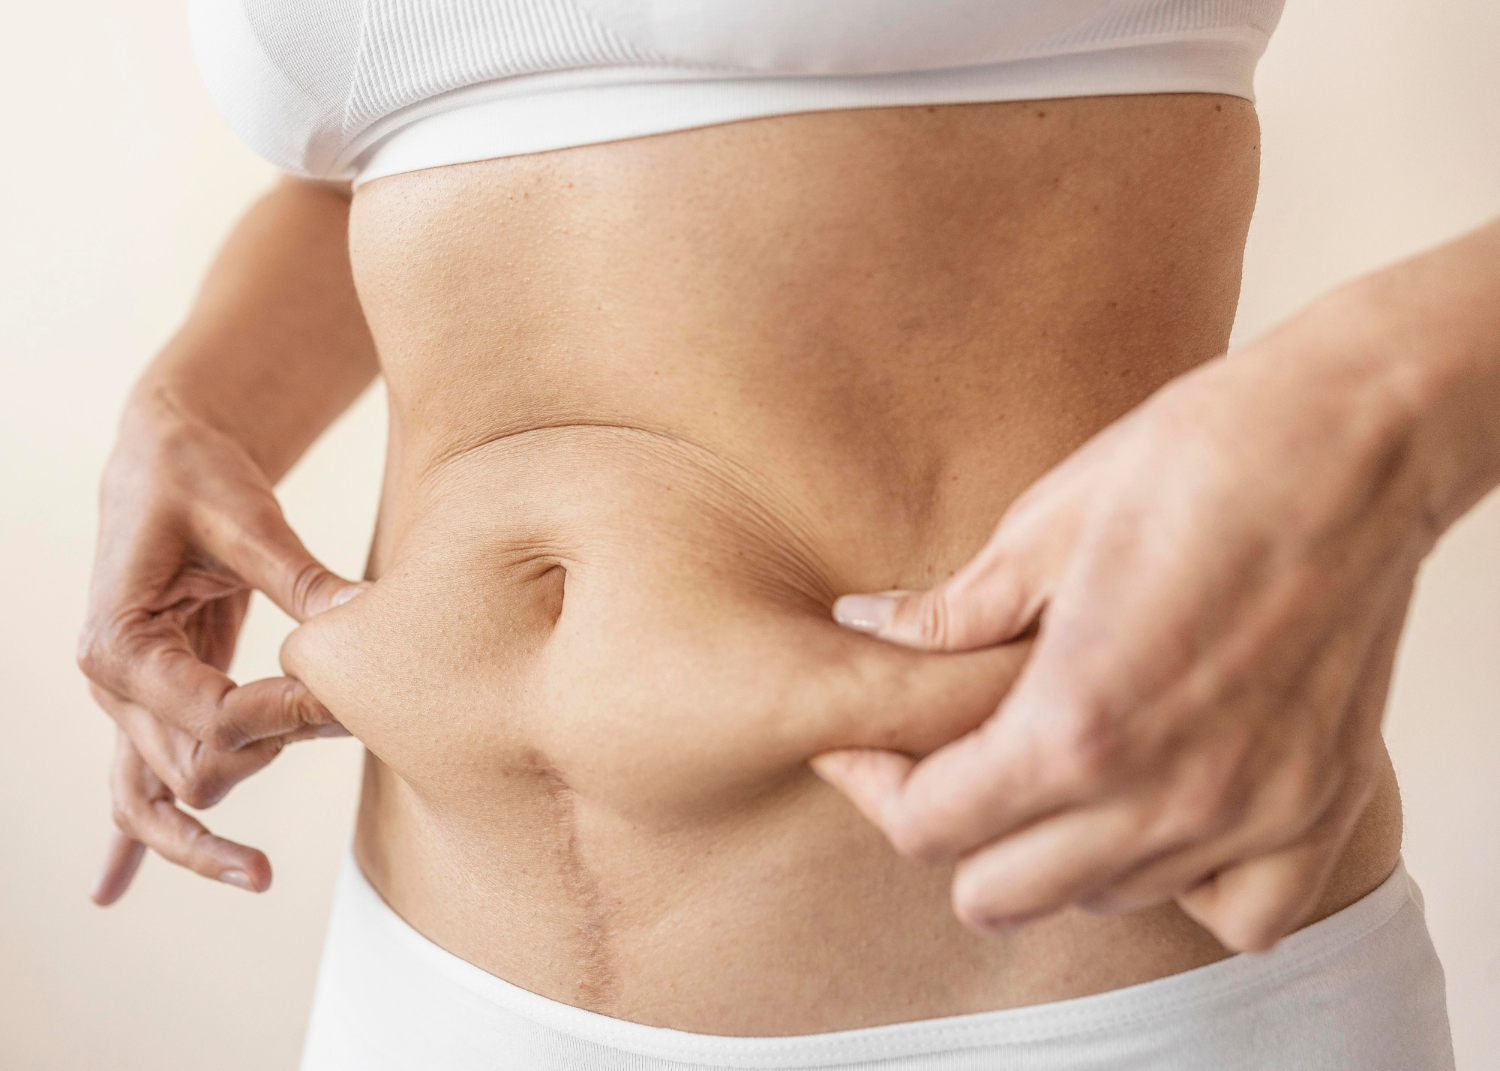 Abdominoplastyka – co to za zabieg i co powinnaś o nim wiedzieć?